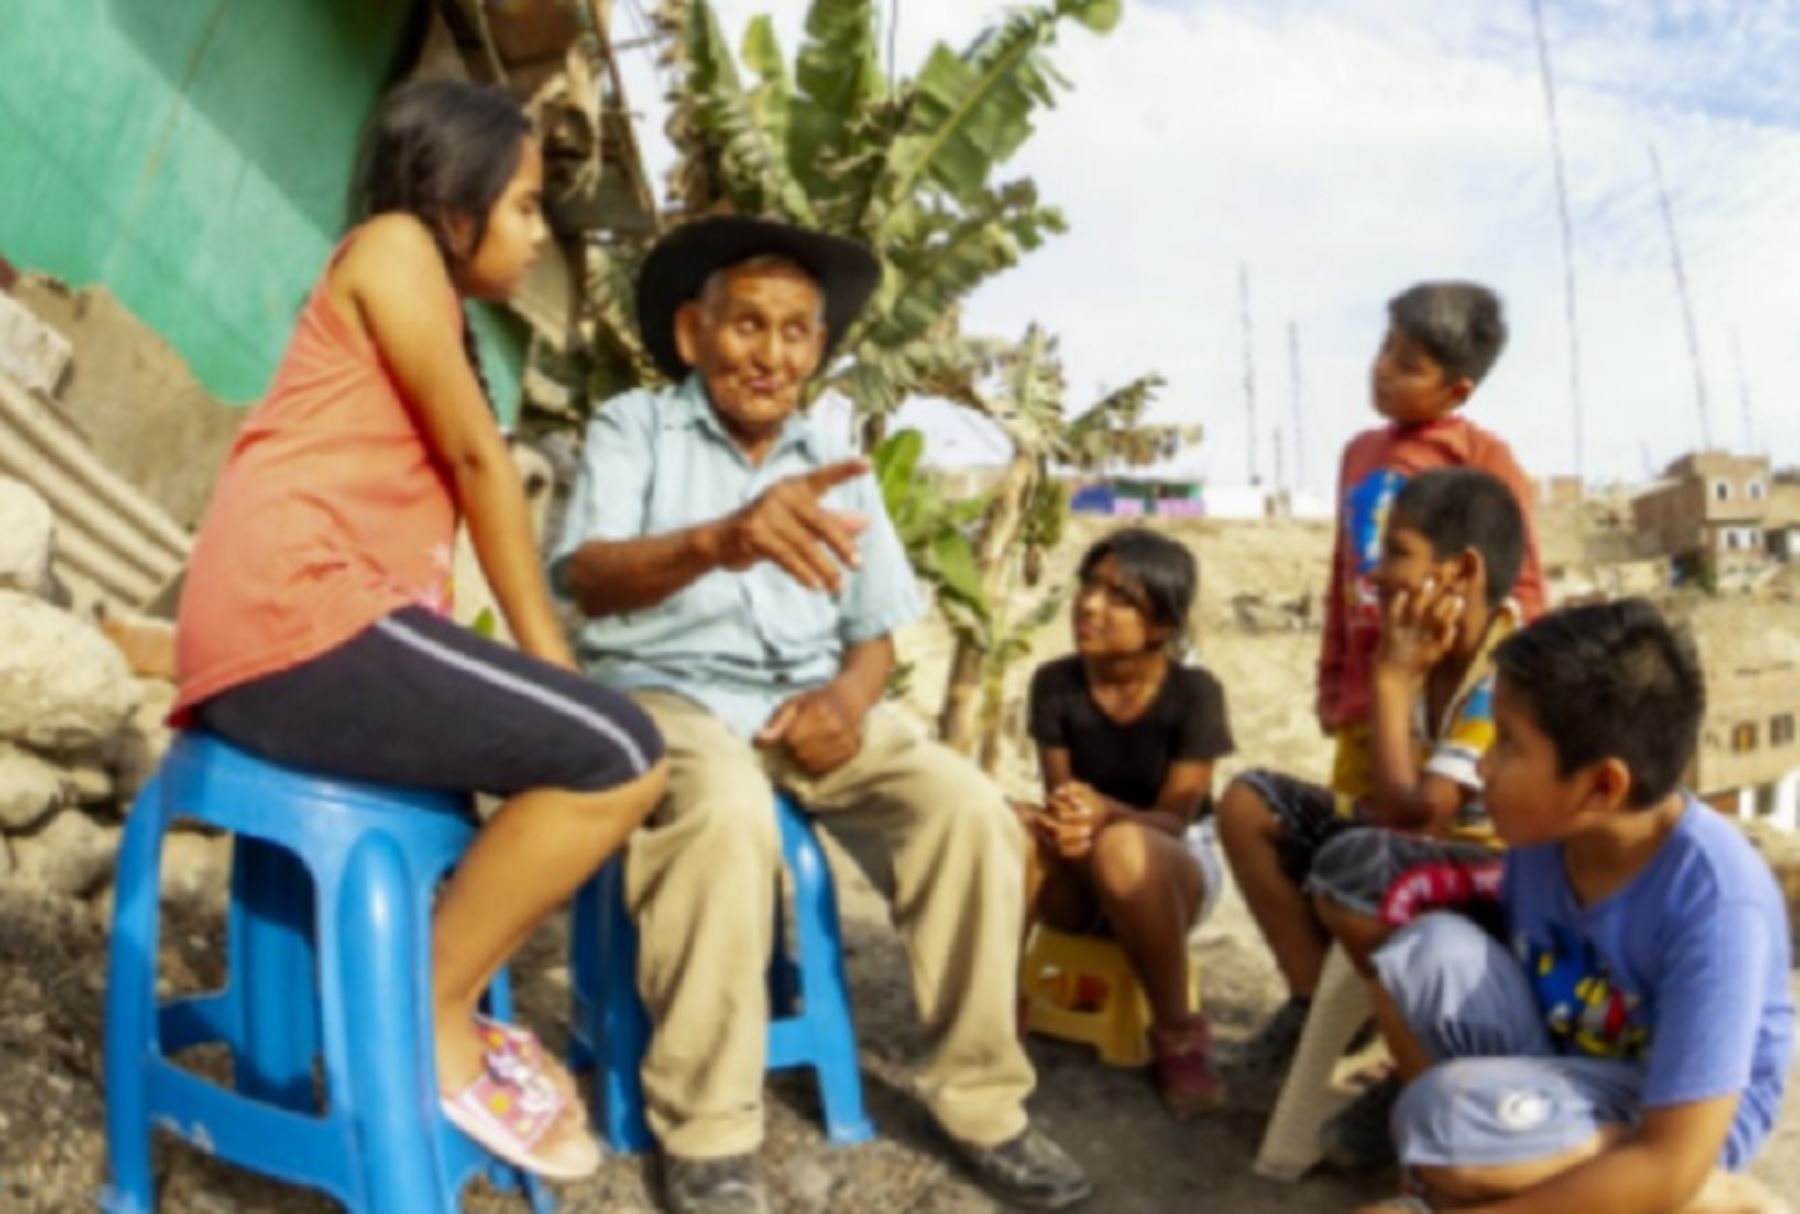 Emilio César Contreras Rojas, un adulto mayor de 86 años, usuario del programa social Pensión 65, y entrañable contador de historias y cuentos que encantan a los niños de su natal Yauyos.